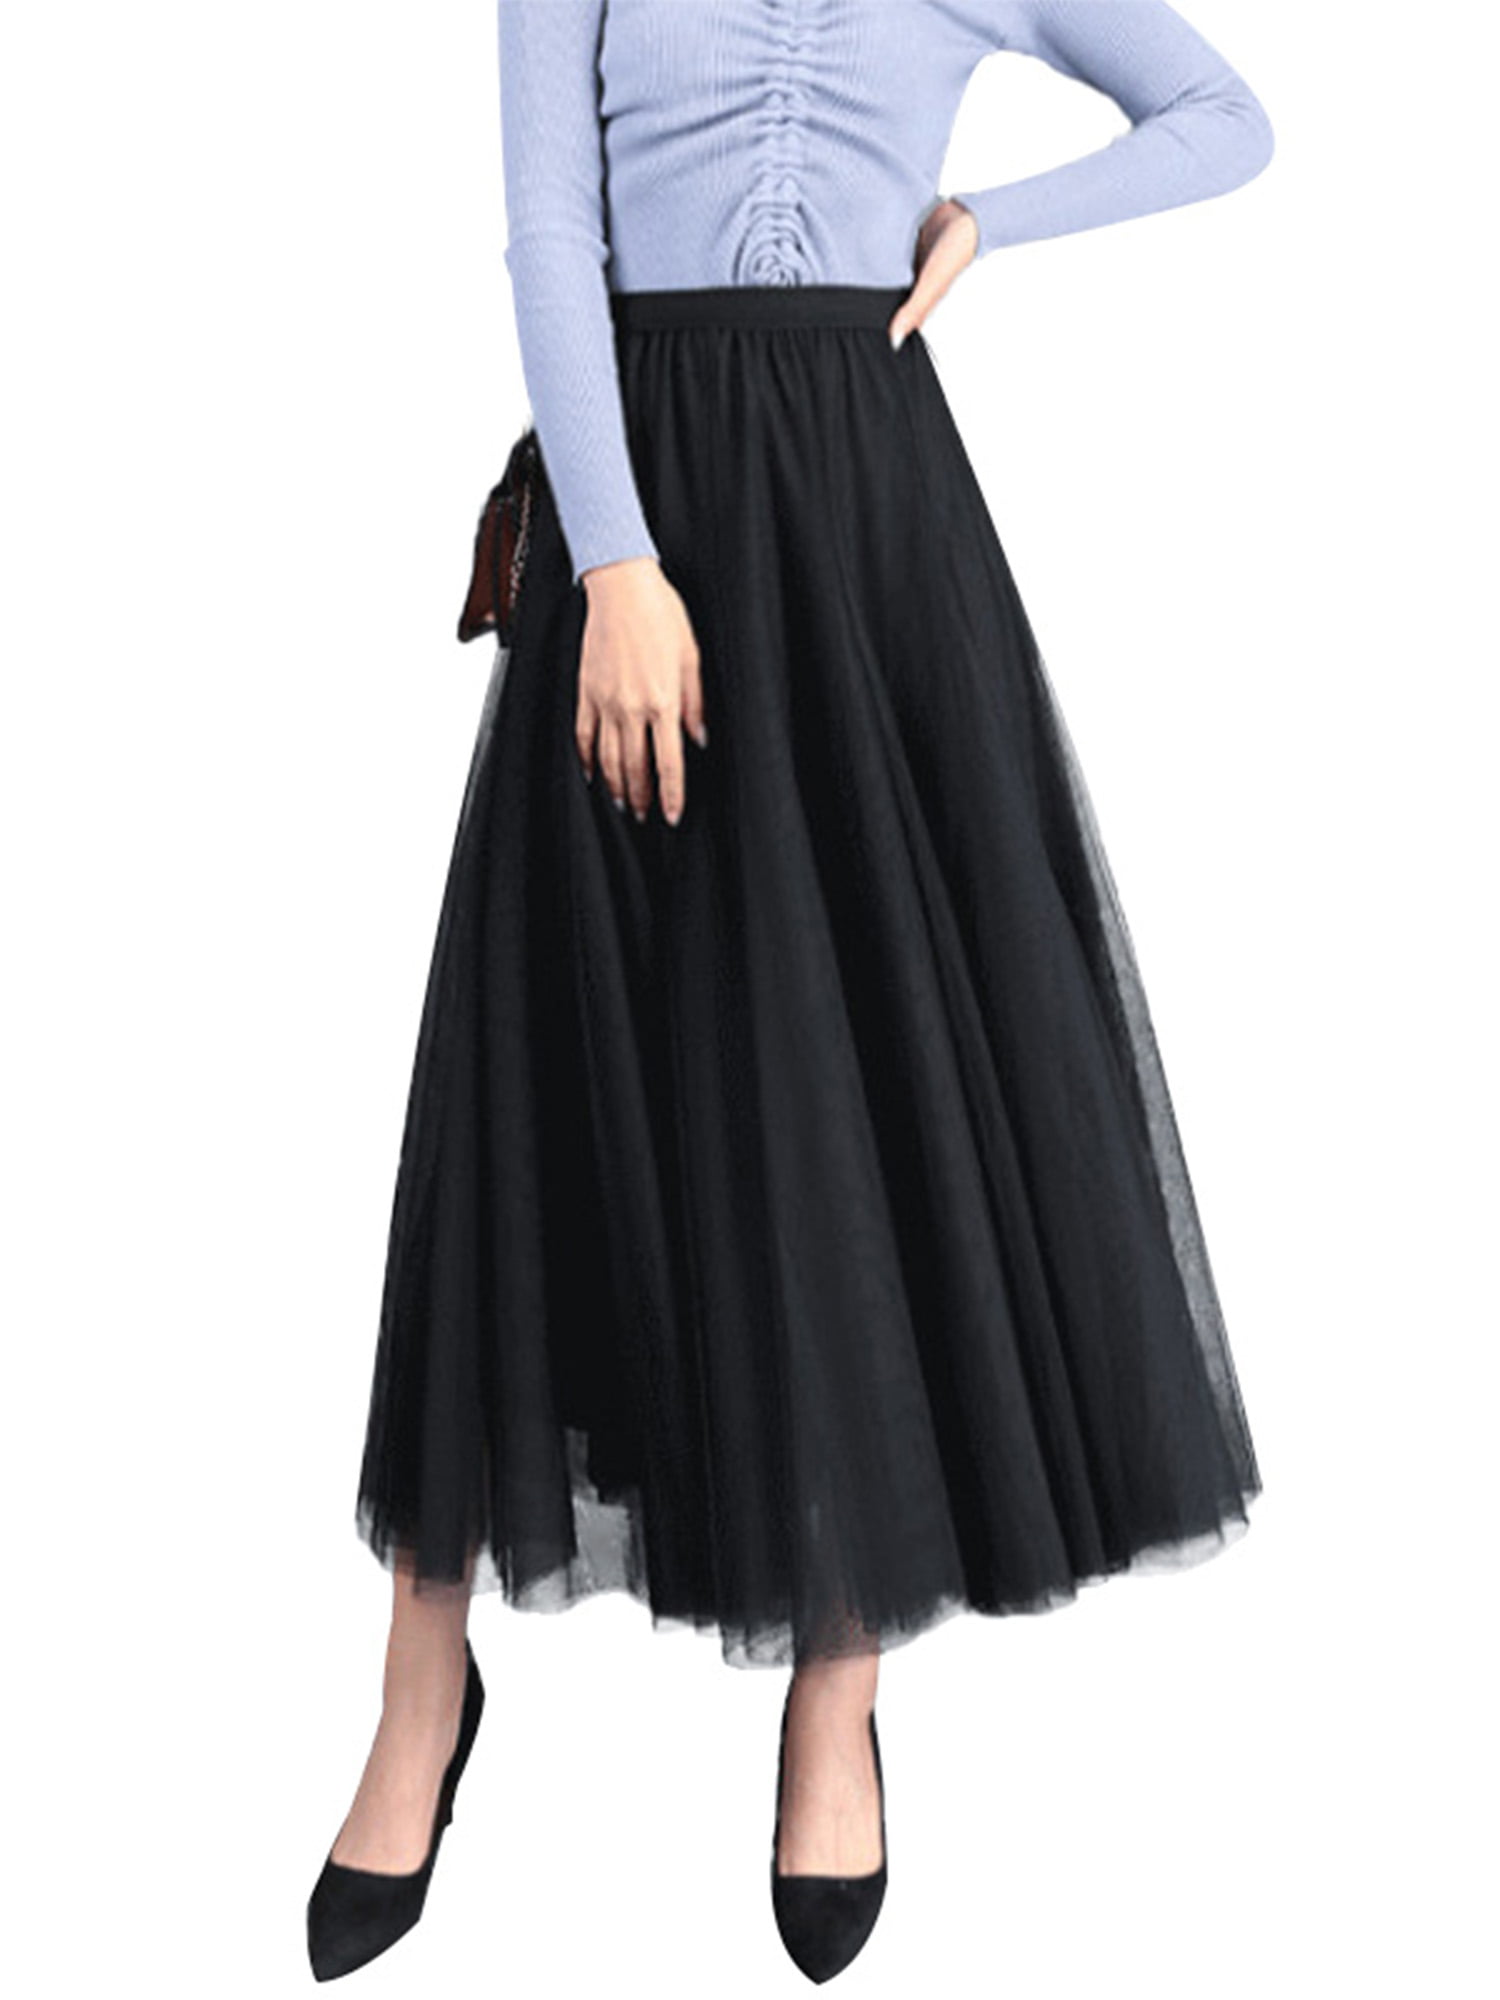 LISTHA Pleated Tulle Midi Skirt Women Elegant Mid-Waist Stretch Long Mesh Skirt